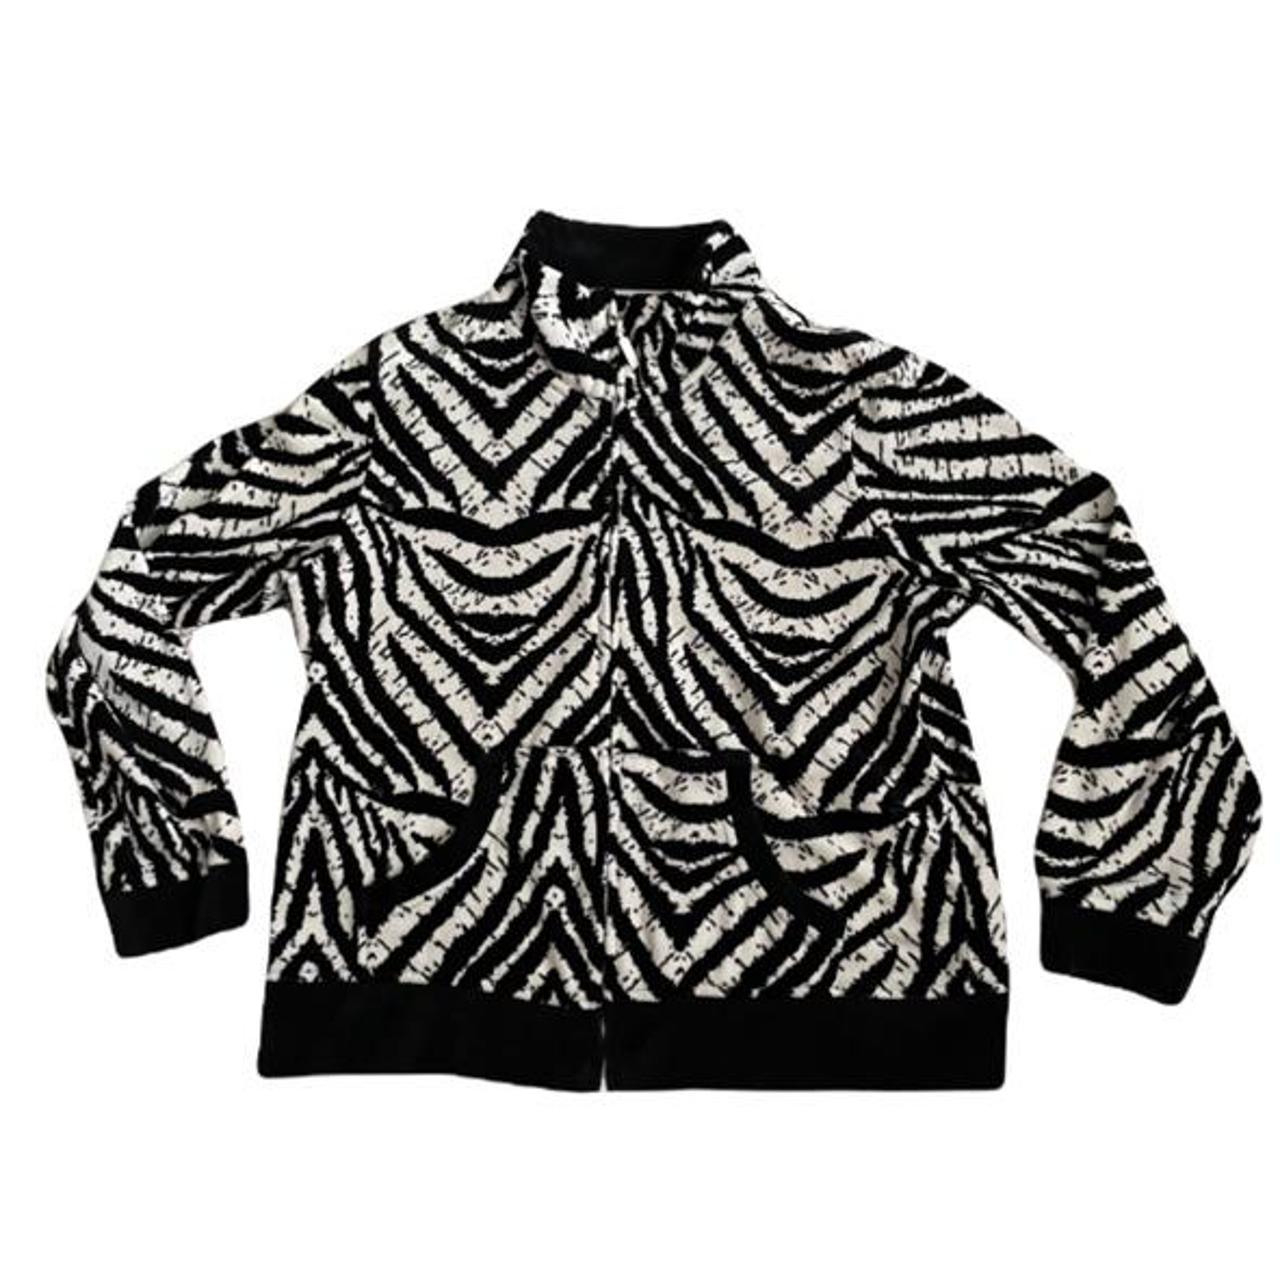 Product Image 1 - zebra print jacket with black